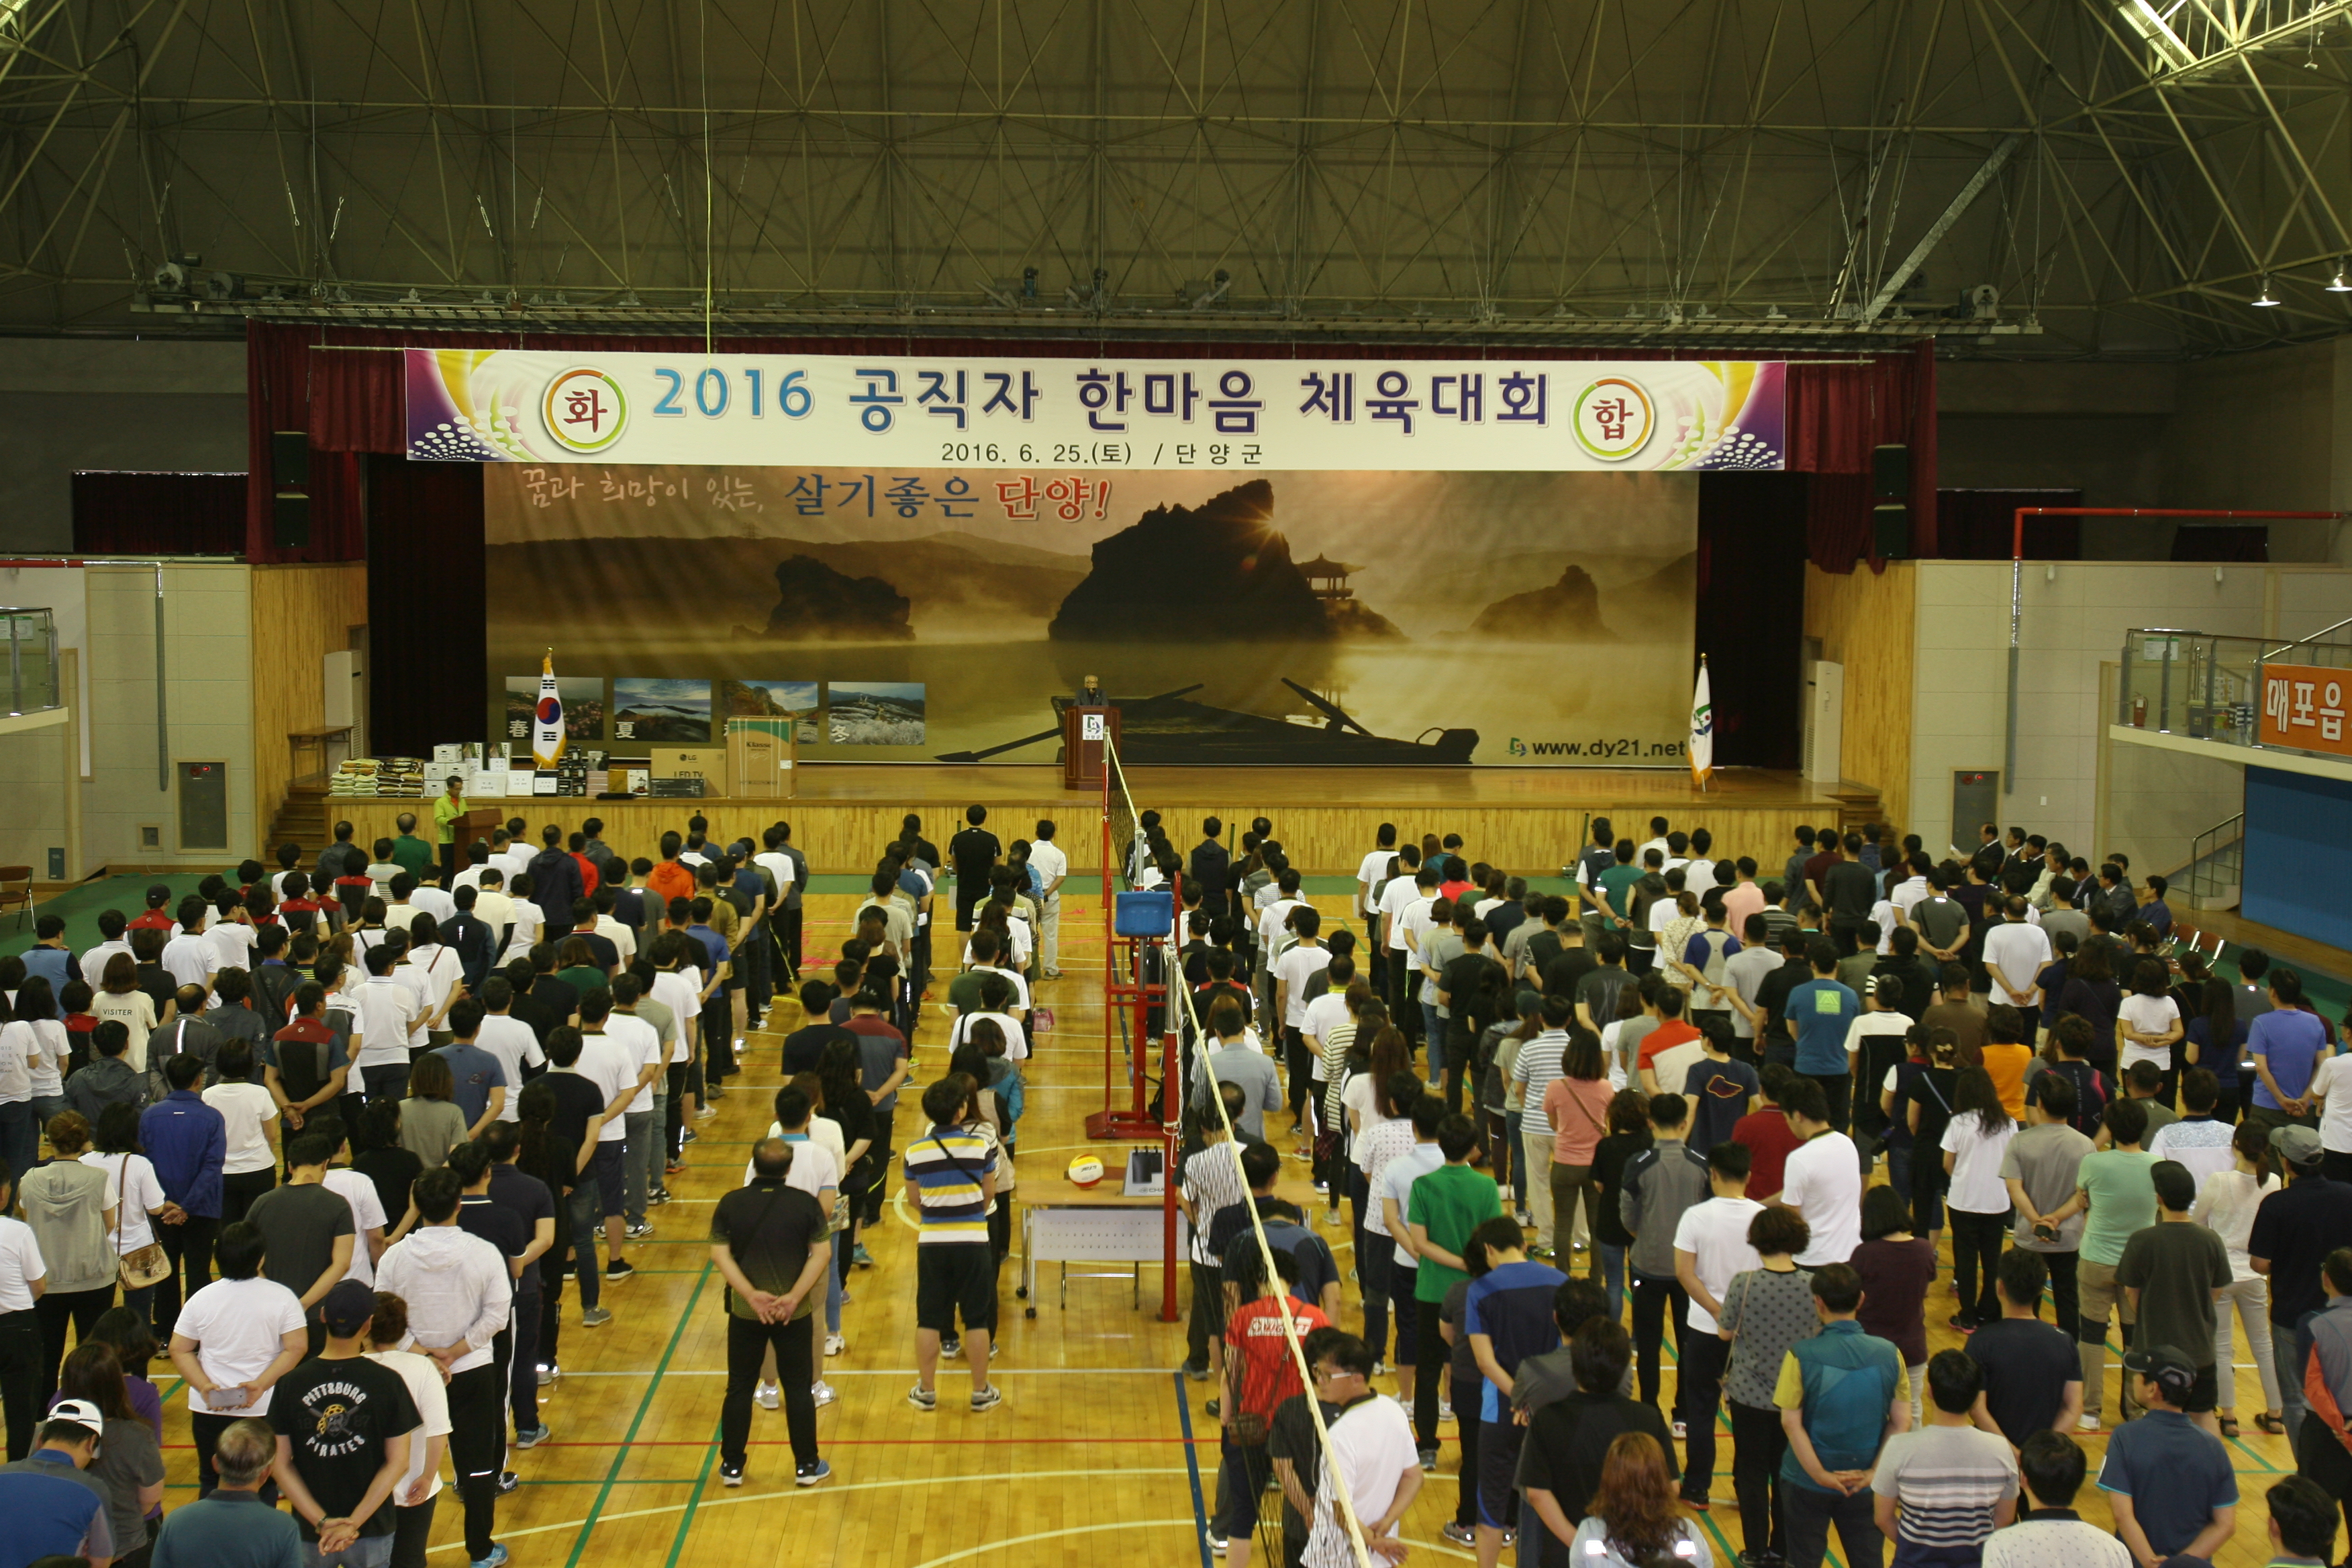 '2016 공무원 체육대회' 게시글의 사진(1) '16.06.25.공무원 체육대회 (1).JPG'